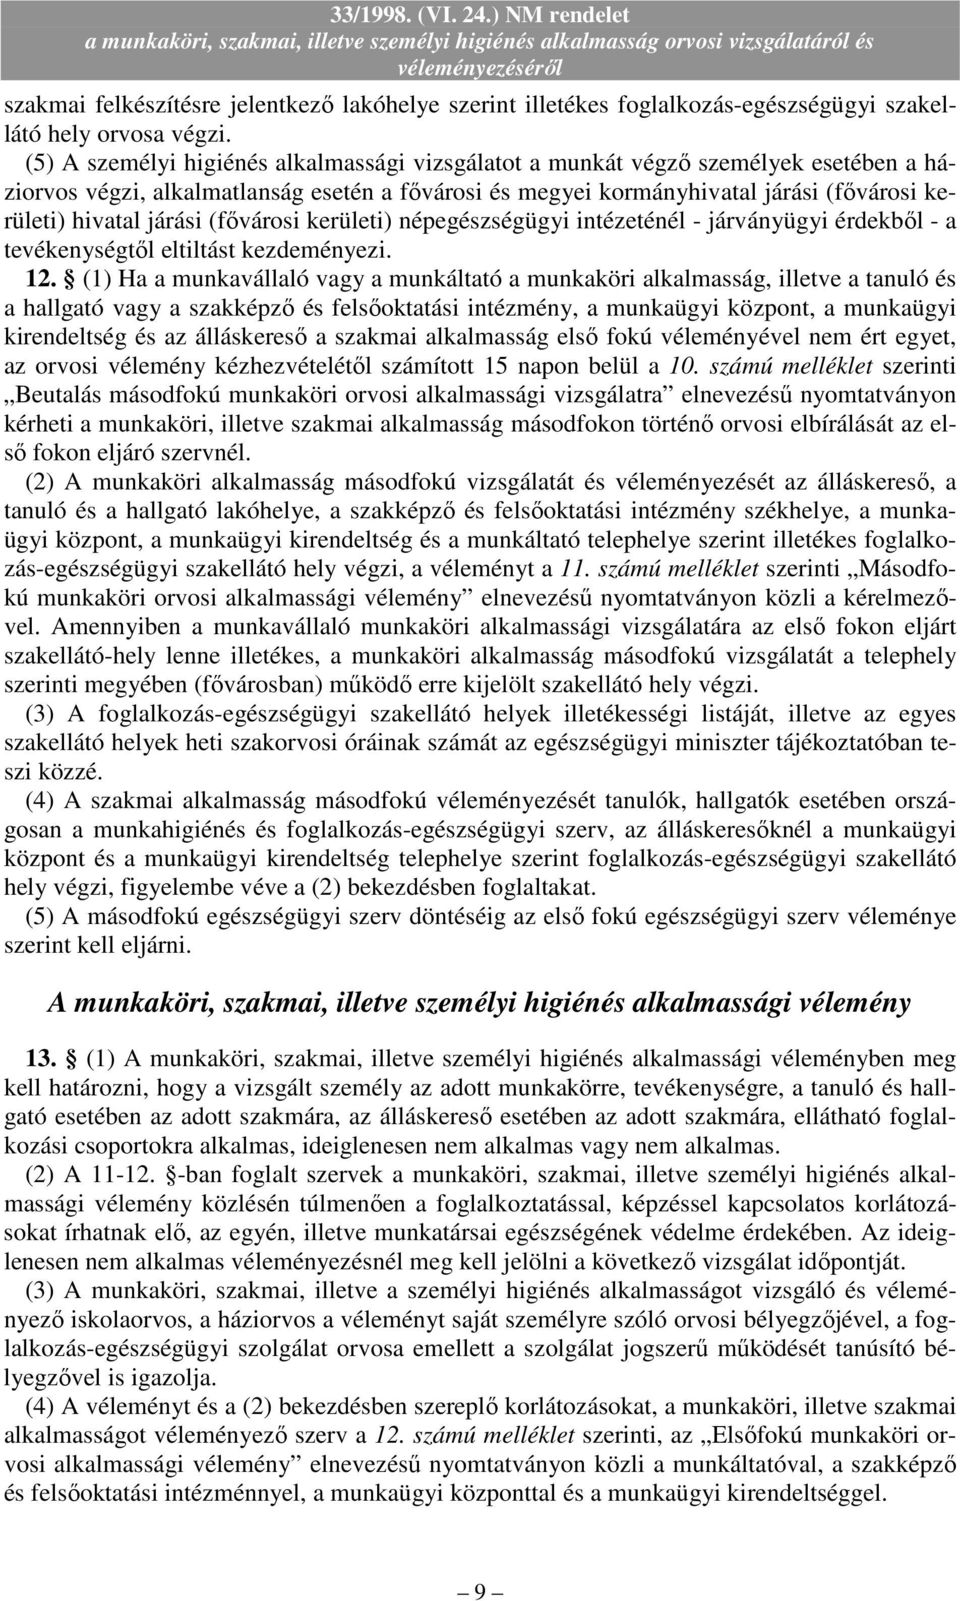 járási (fıvárosi kerületi) népegészségügyi intézeténél - járványügyi érdekbıl - a tevékenységtıl eltiltást kezdeményezi. 12.